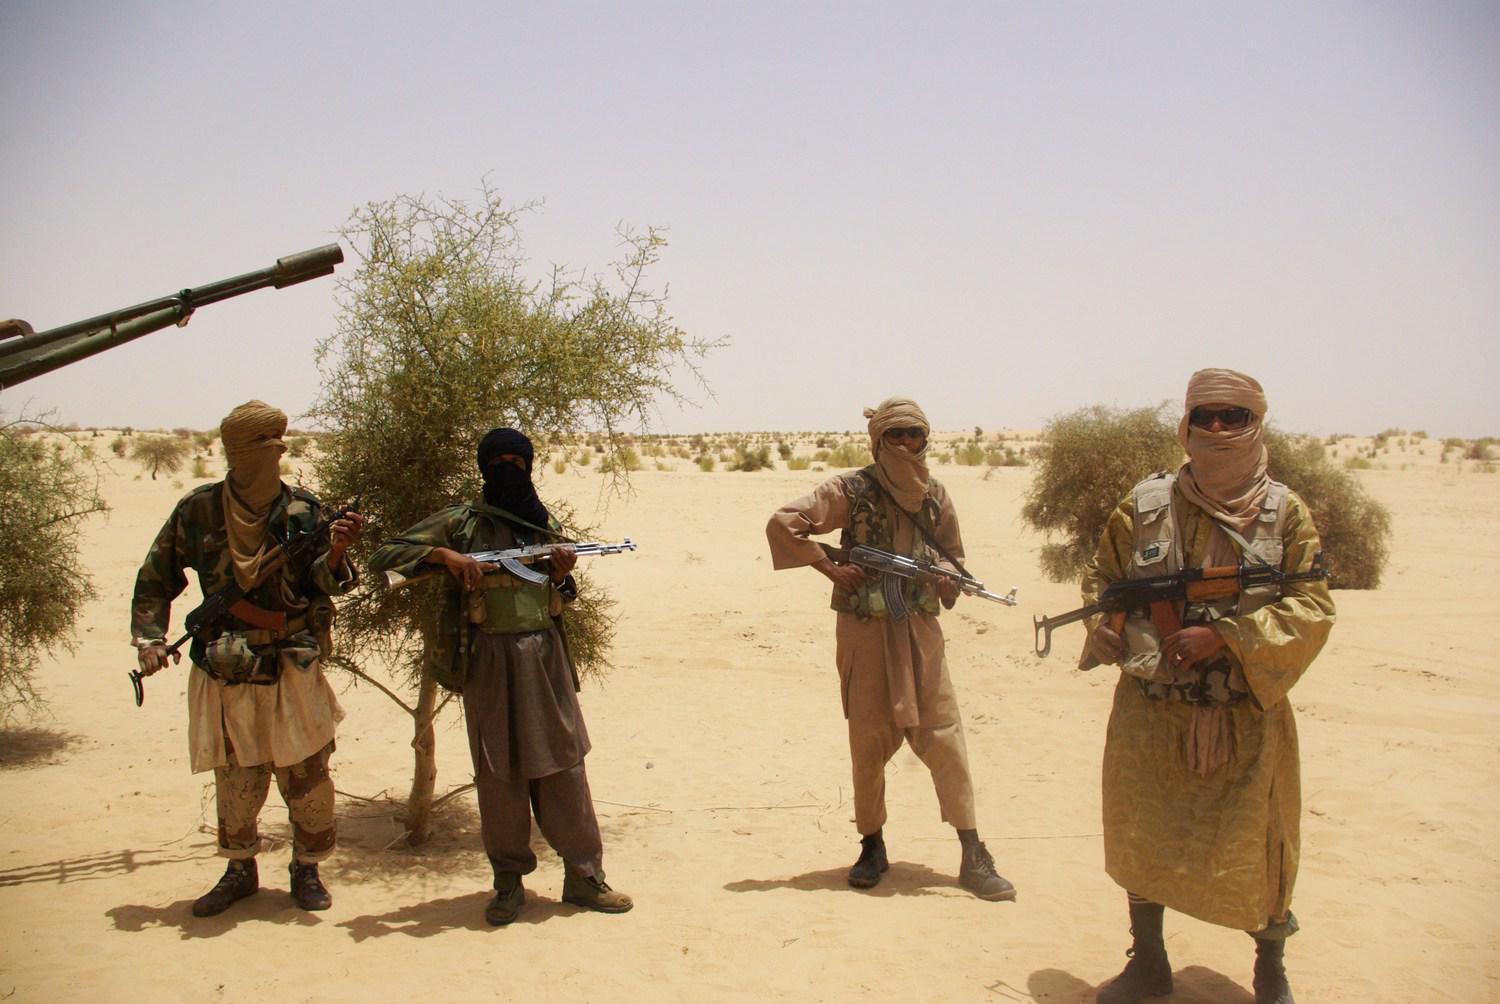 الجماعات الارهابية عززت من تحركاتها في منطقة الساحل والصحراء